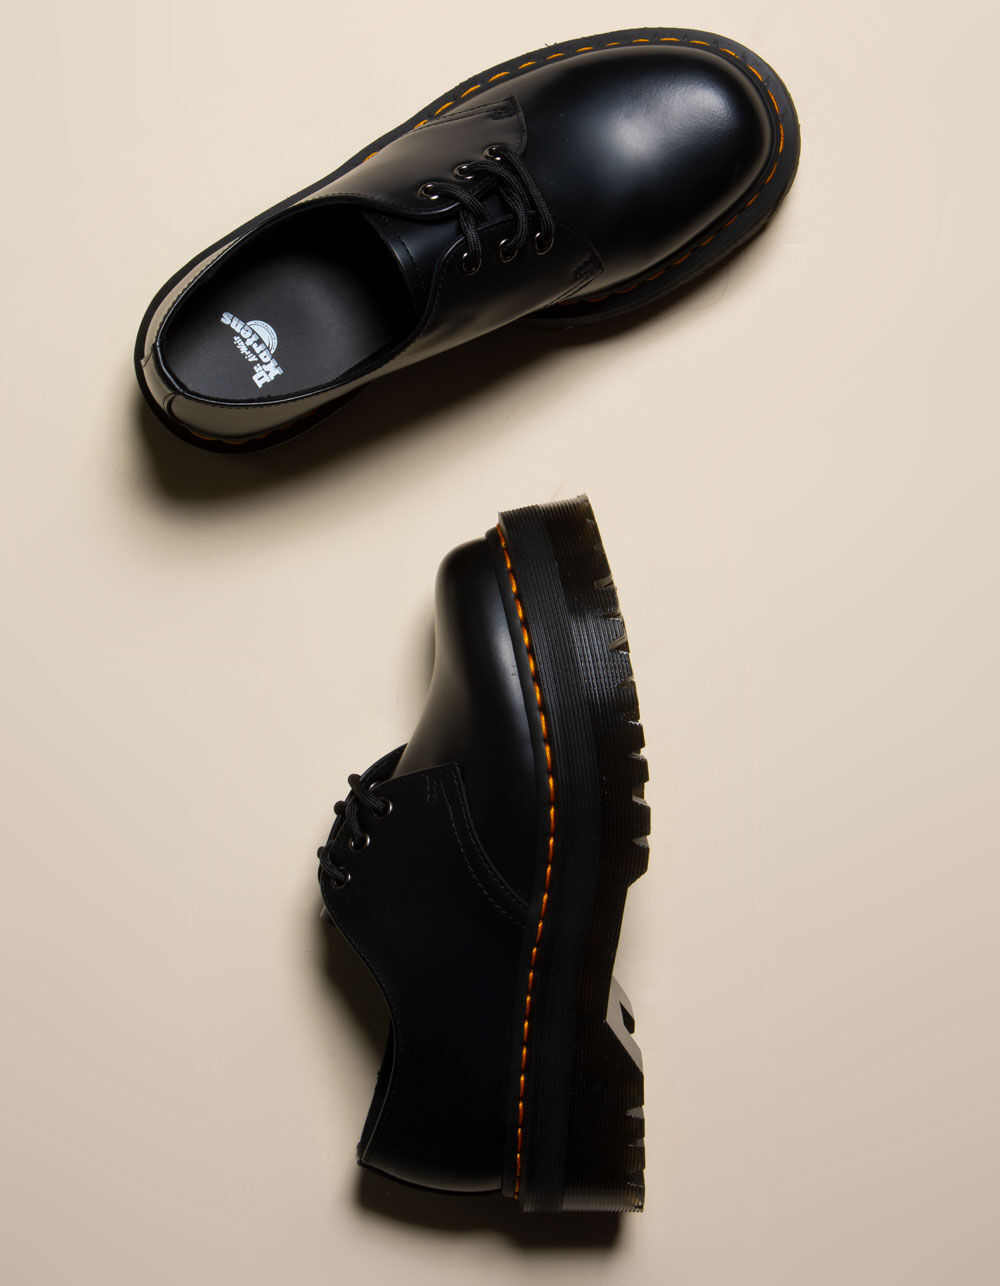 Dr. Martens 1461 Quad Smooth Leather Platform Shoes - Black - 8